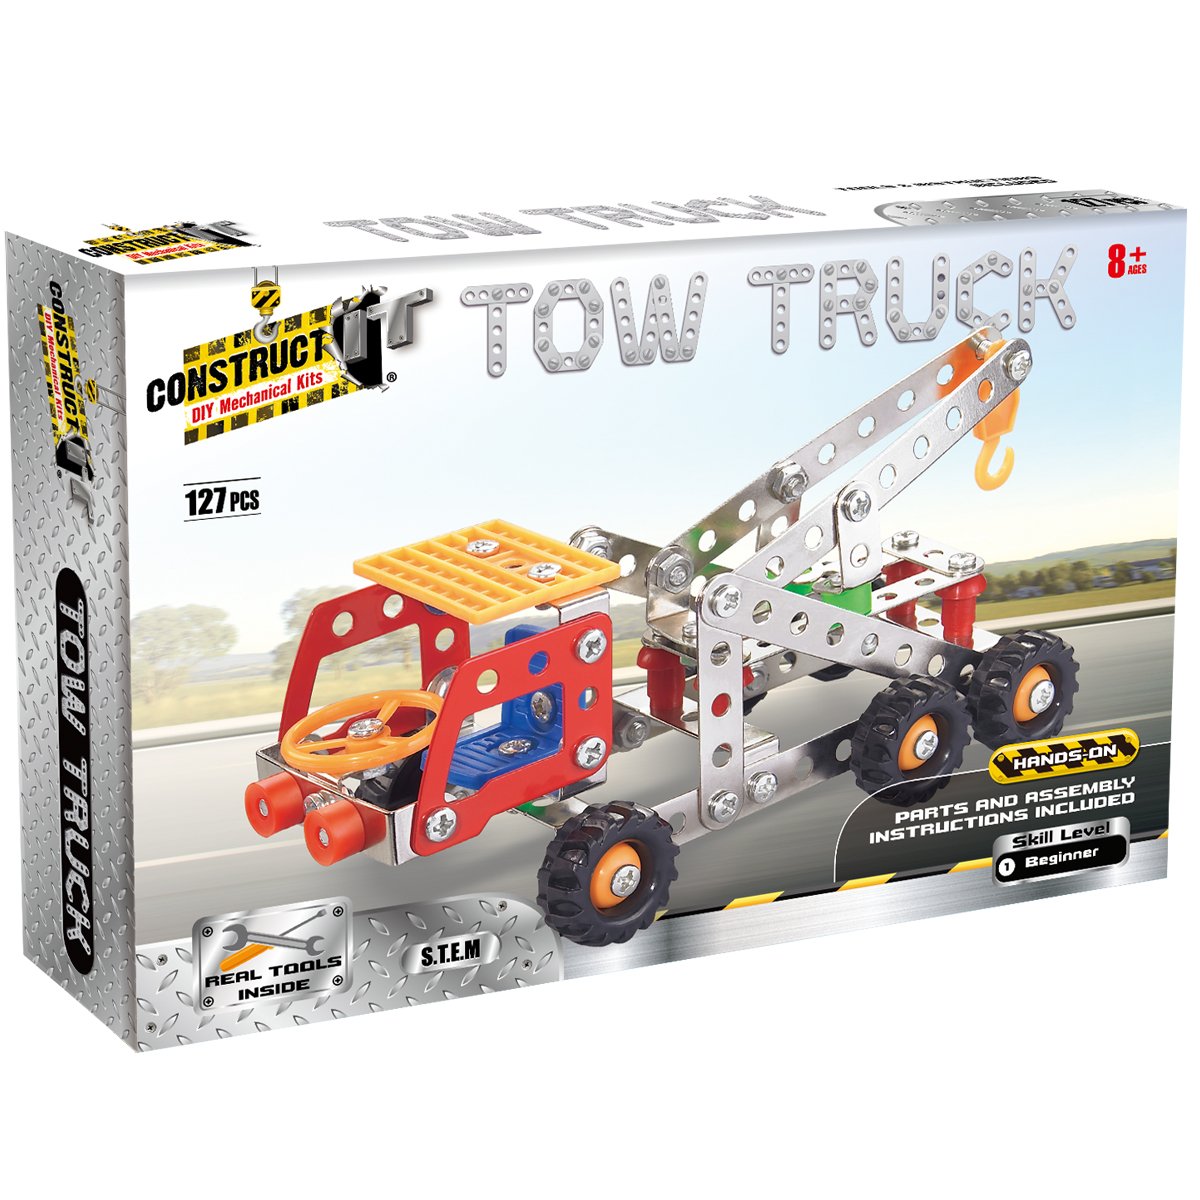 Construct It Originals Tow Truck